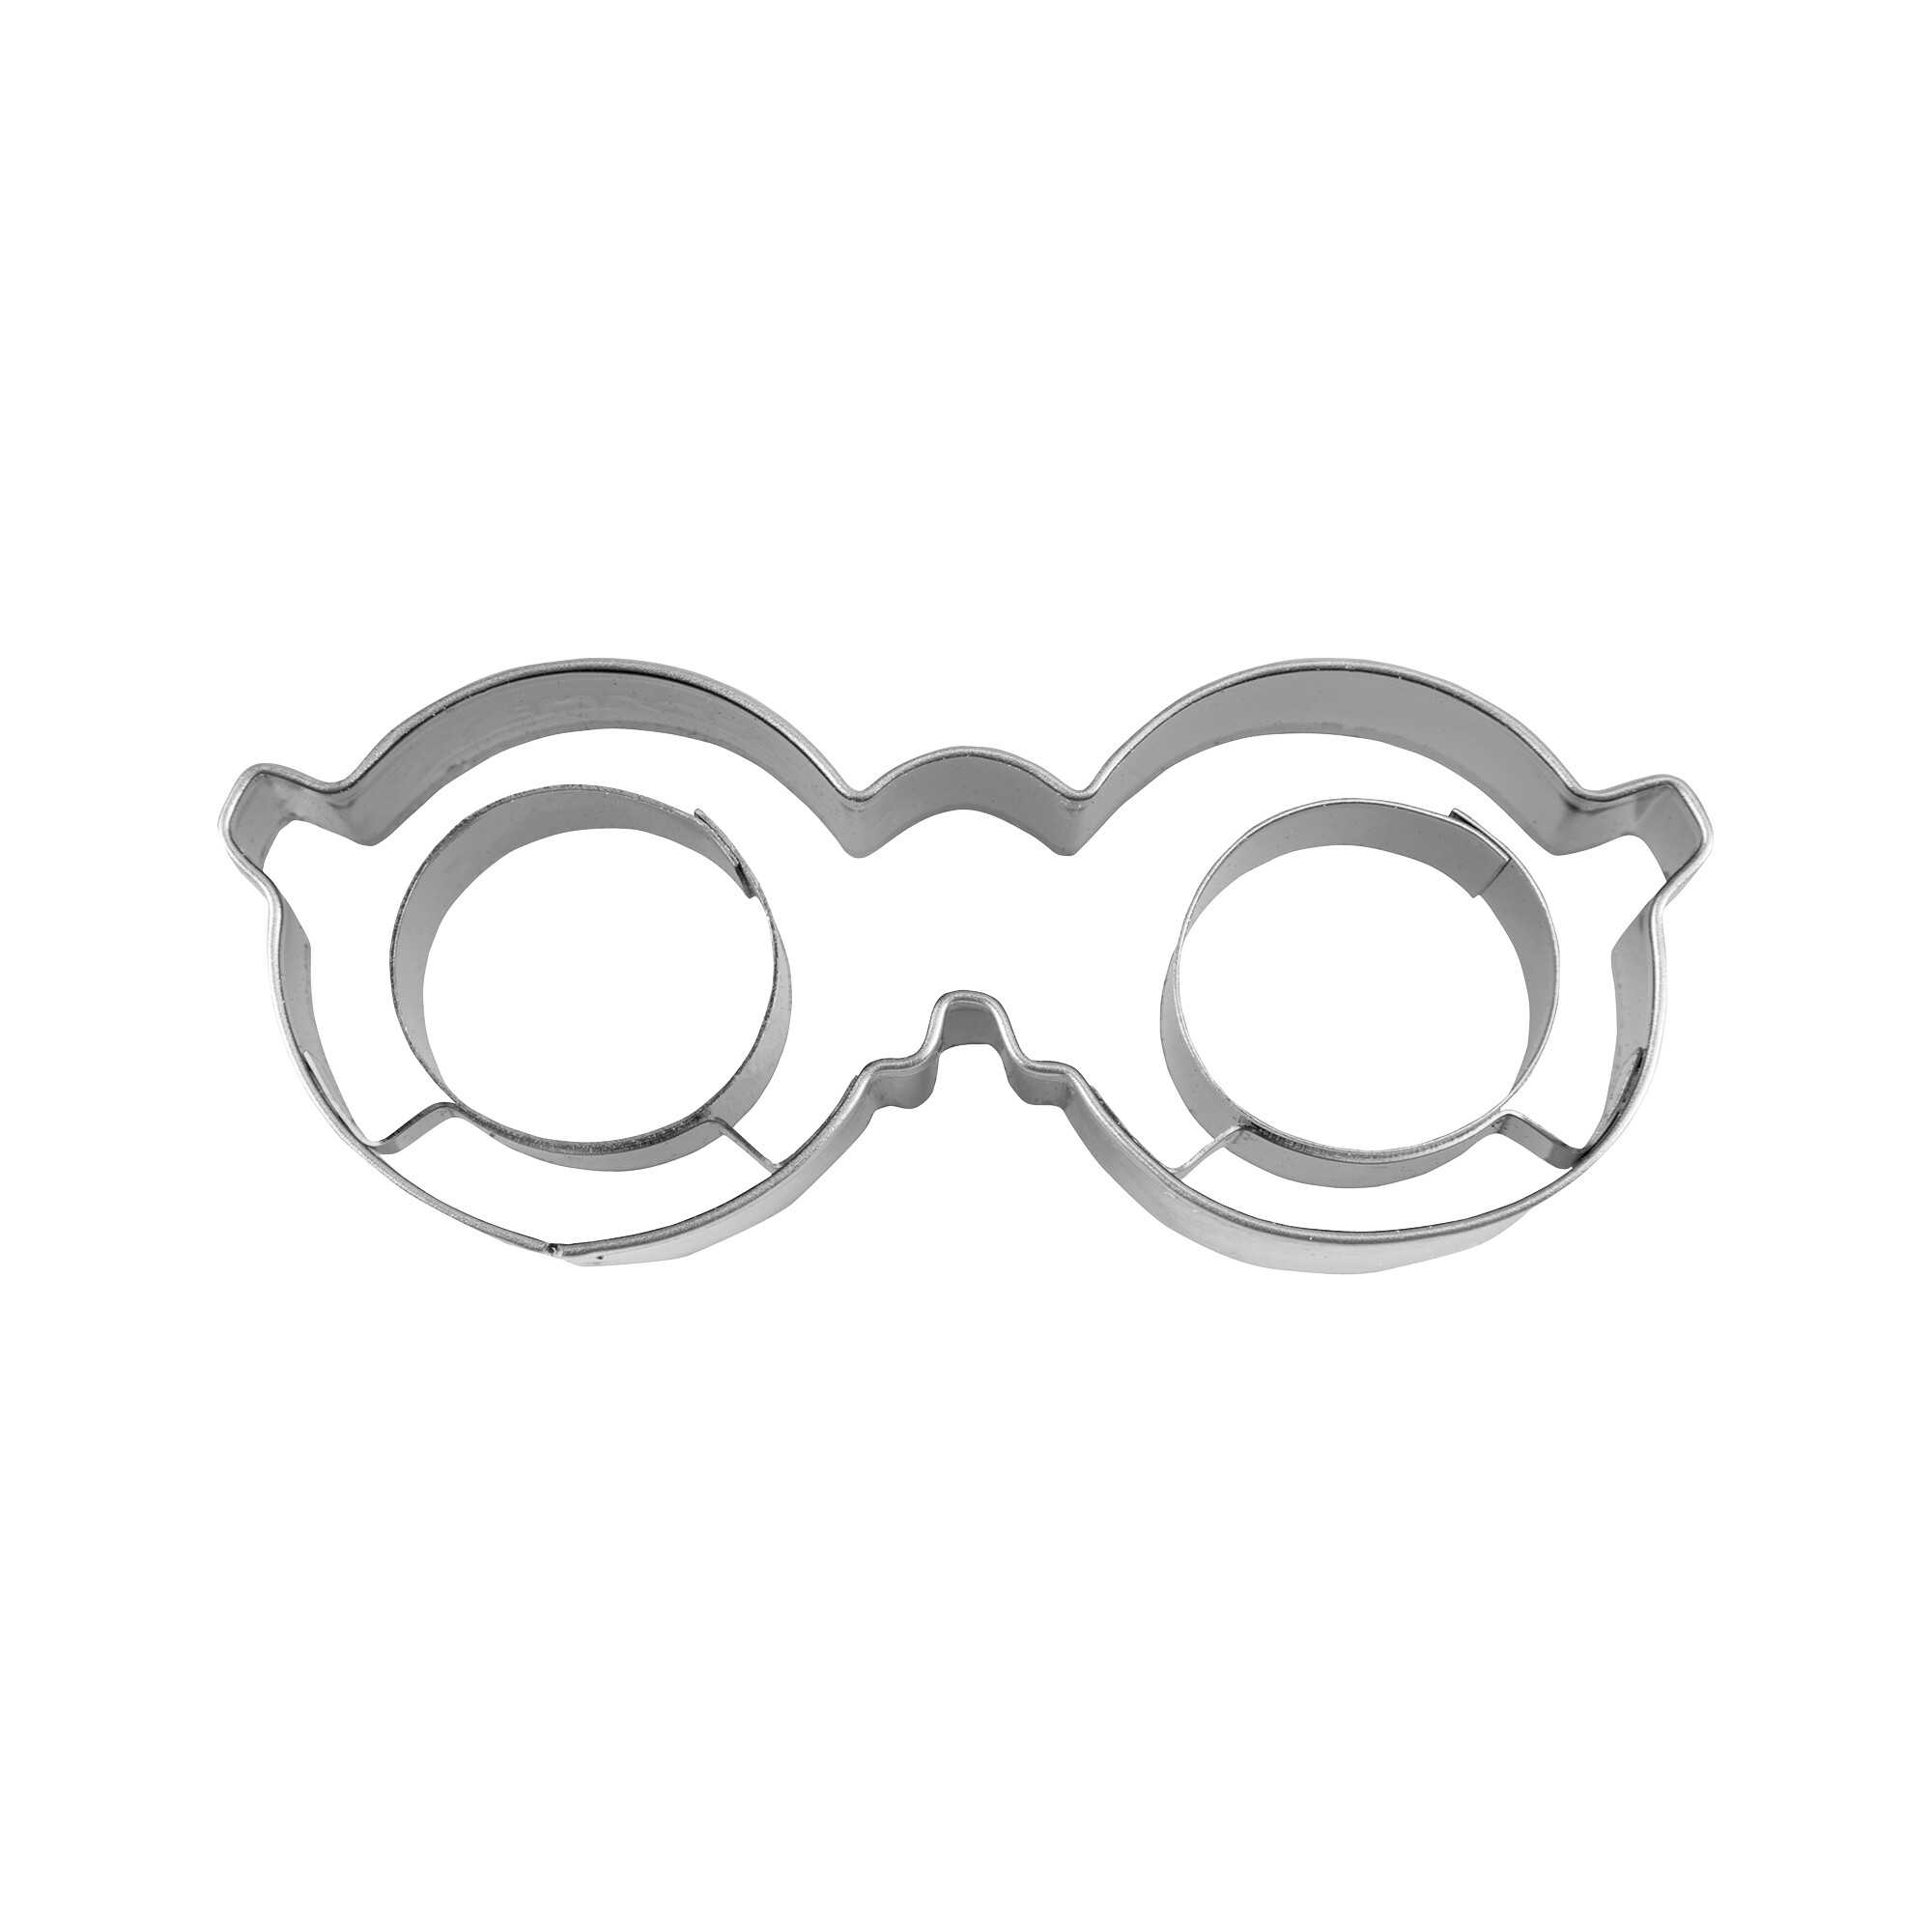 Präge-Ausstecher – Brille